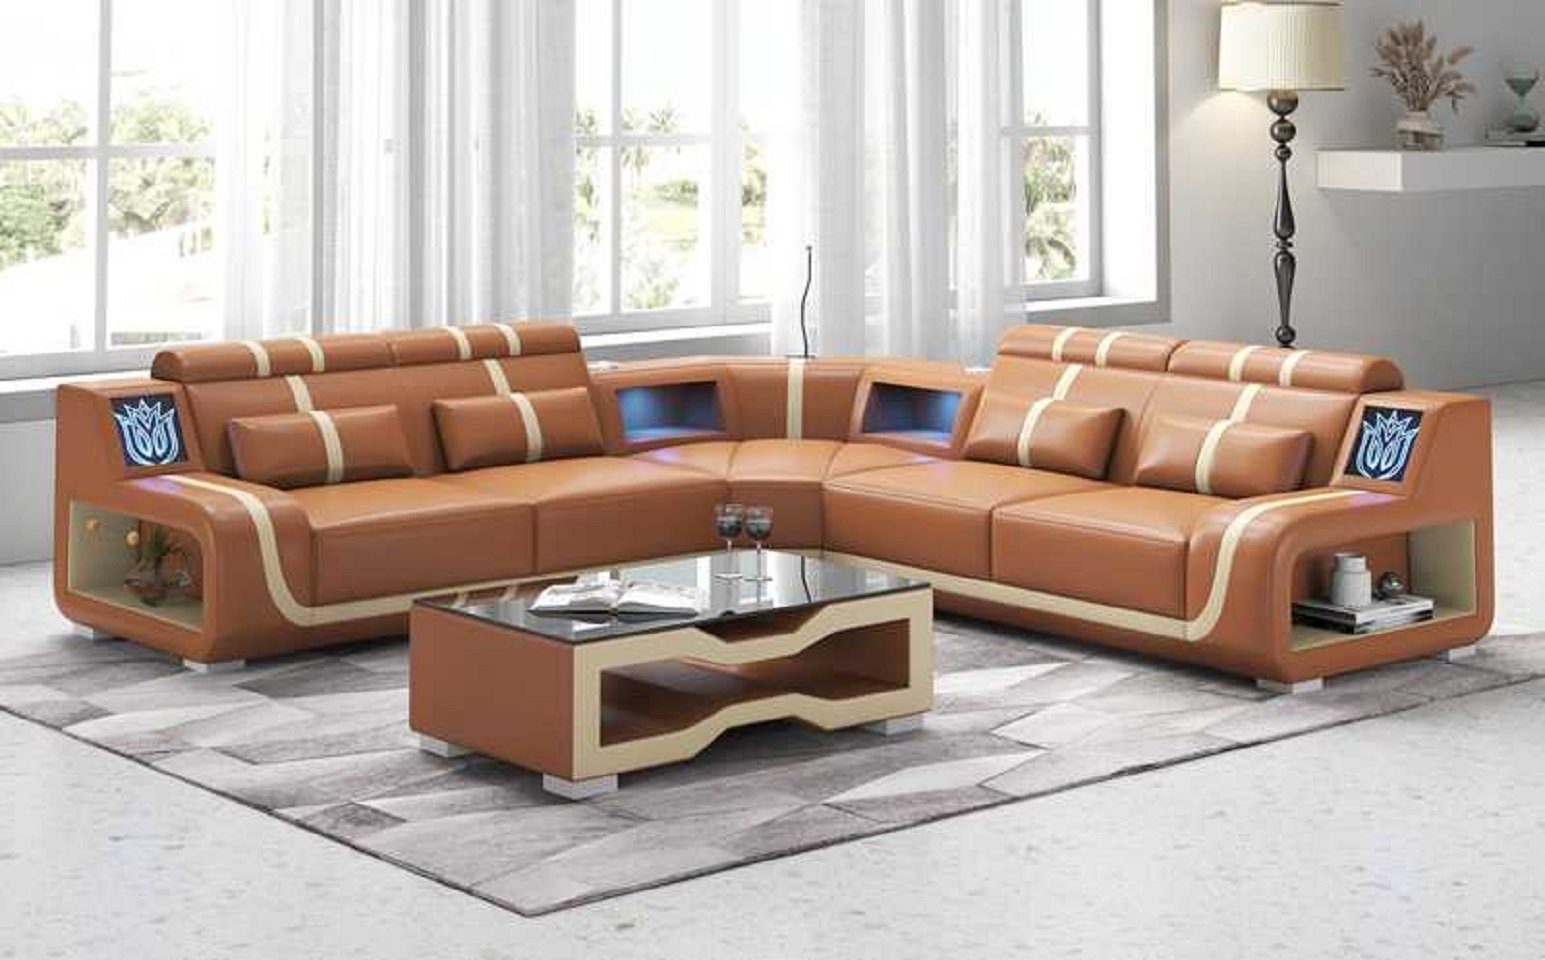 JVmoebel Ecksofa Luxus Couch Ecksofa L Form Modern Kunstleder couchen Sofa Sofas, 3 Teile, Made in Europe Braun